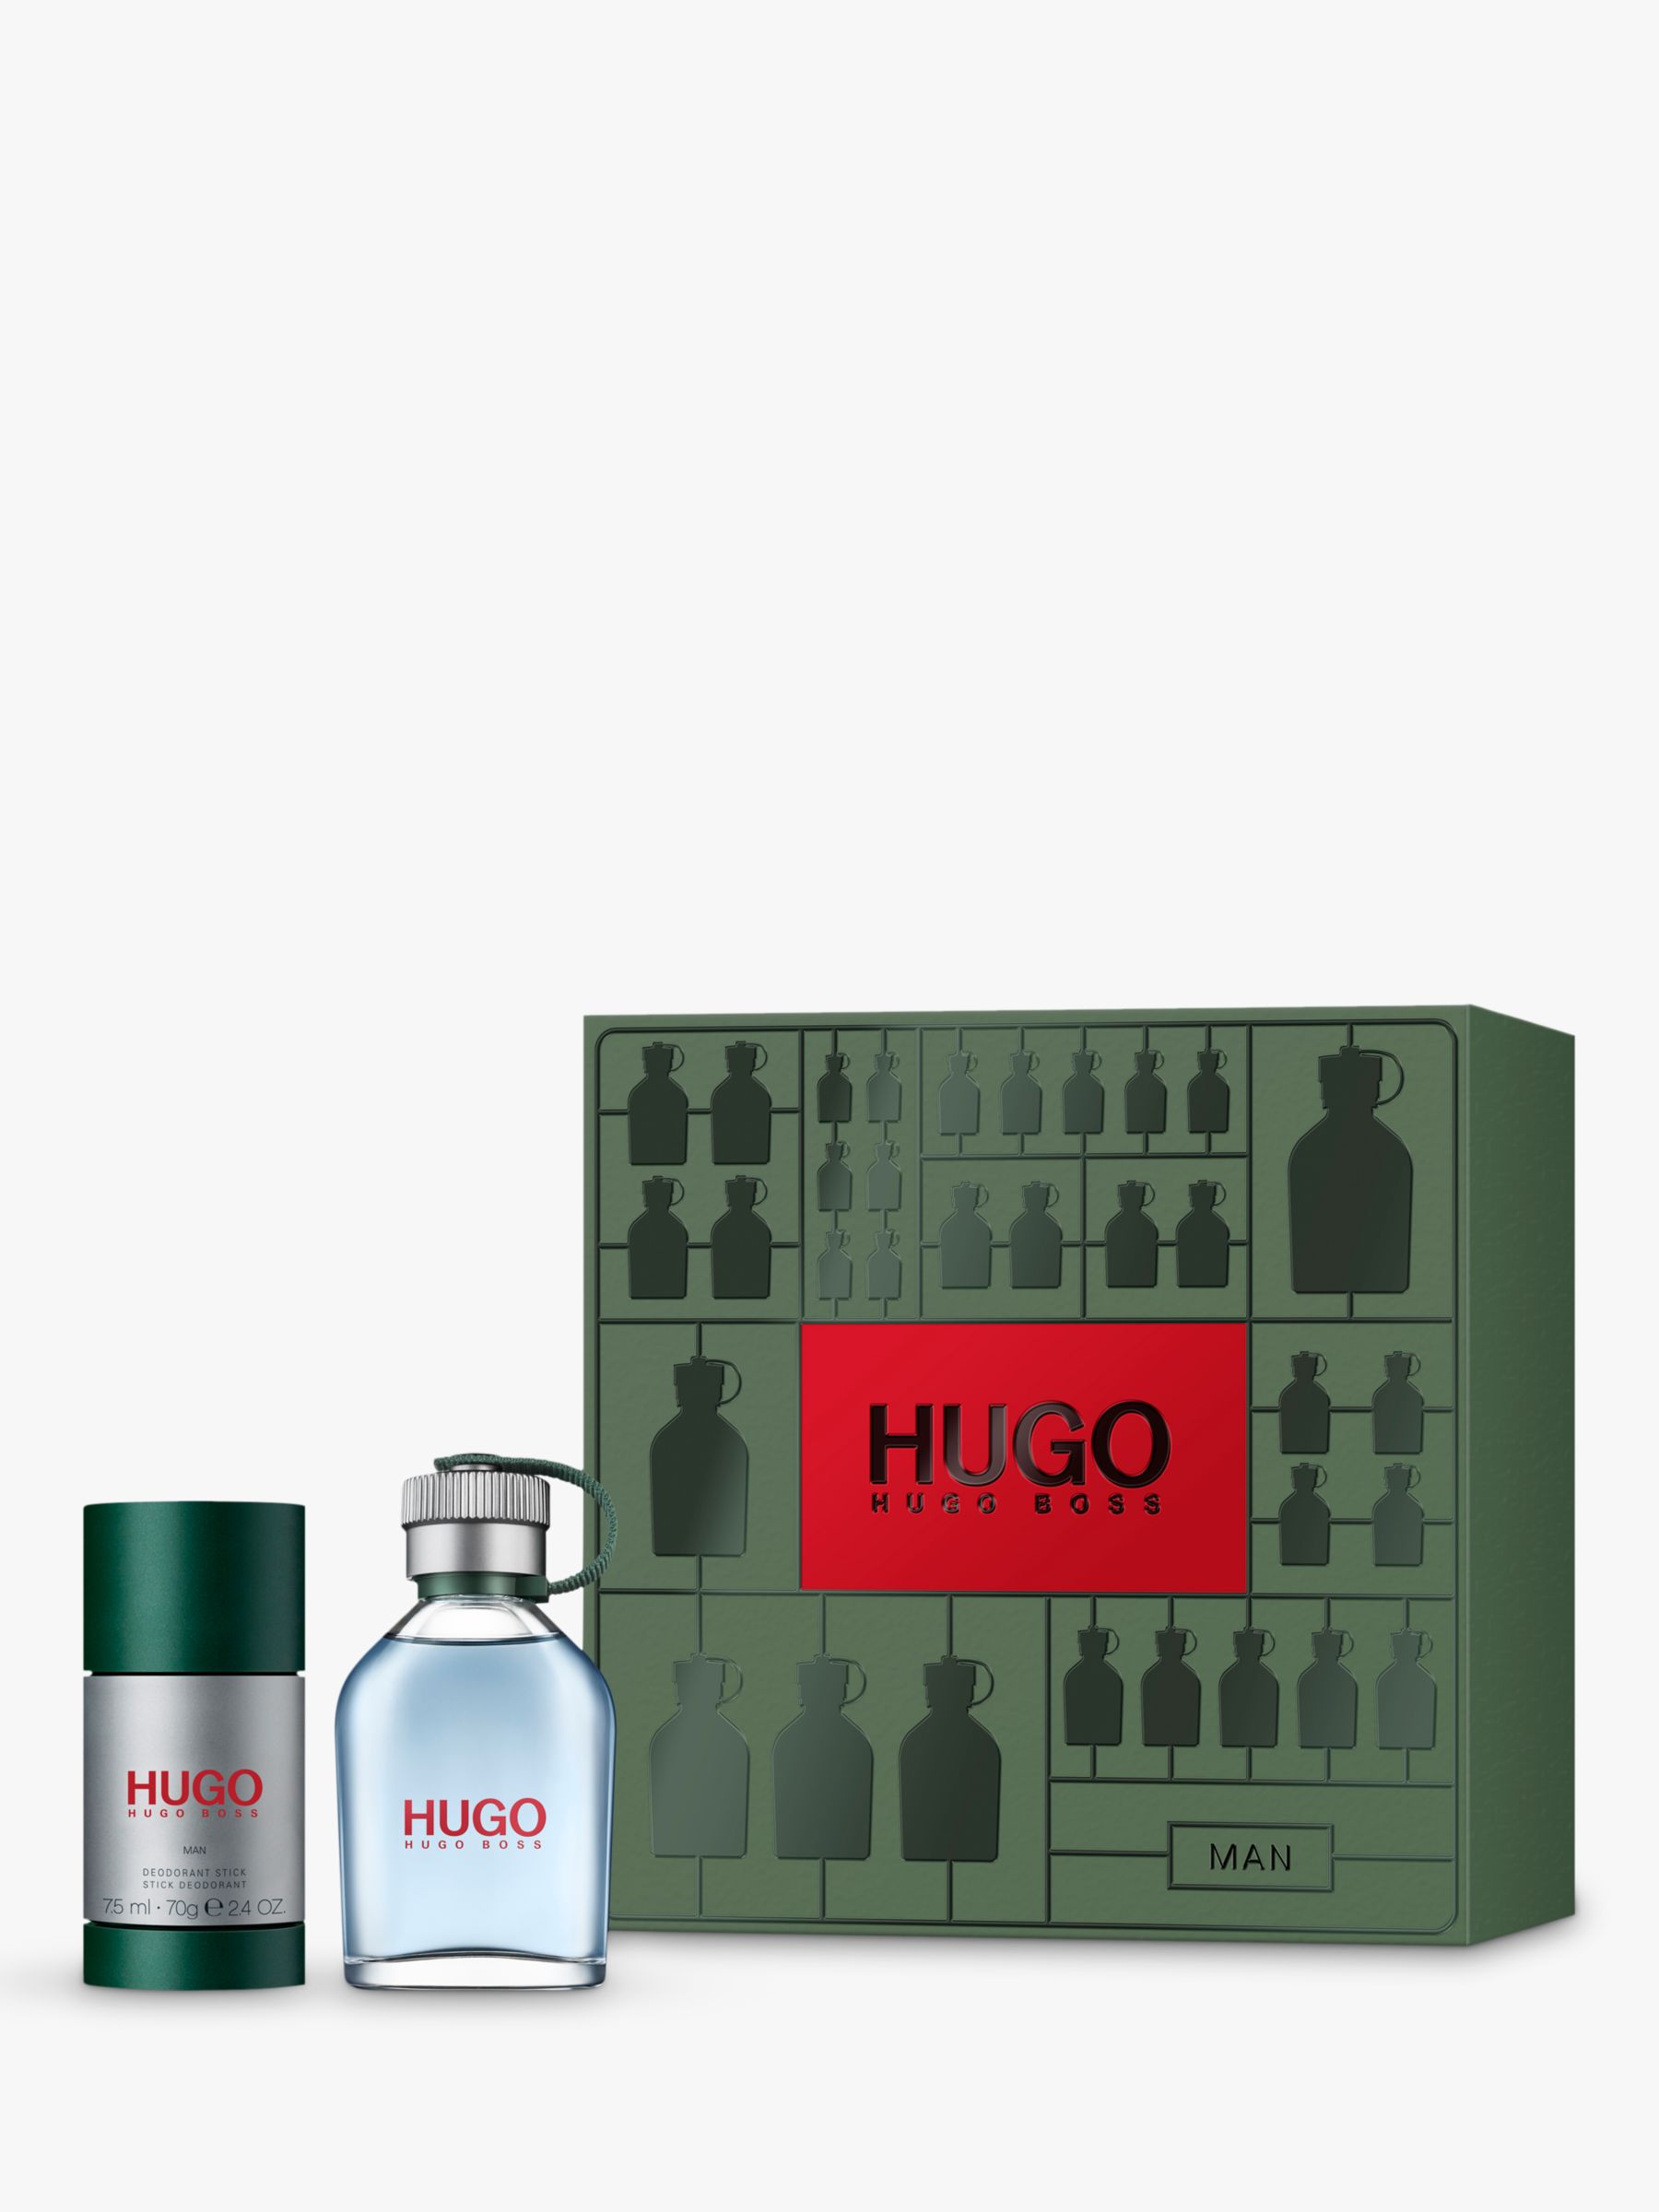 hugo boss scent for him gift set